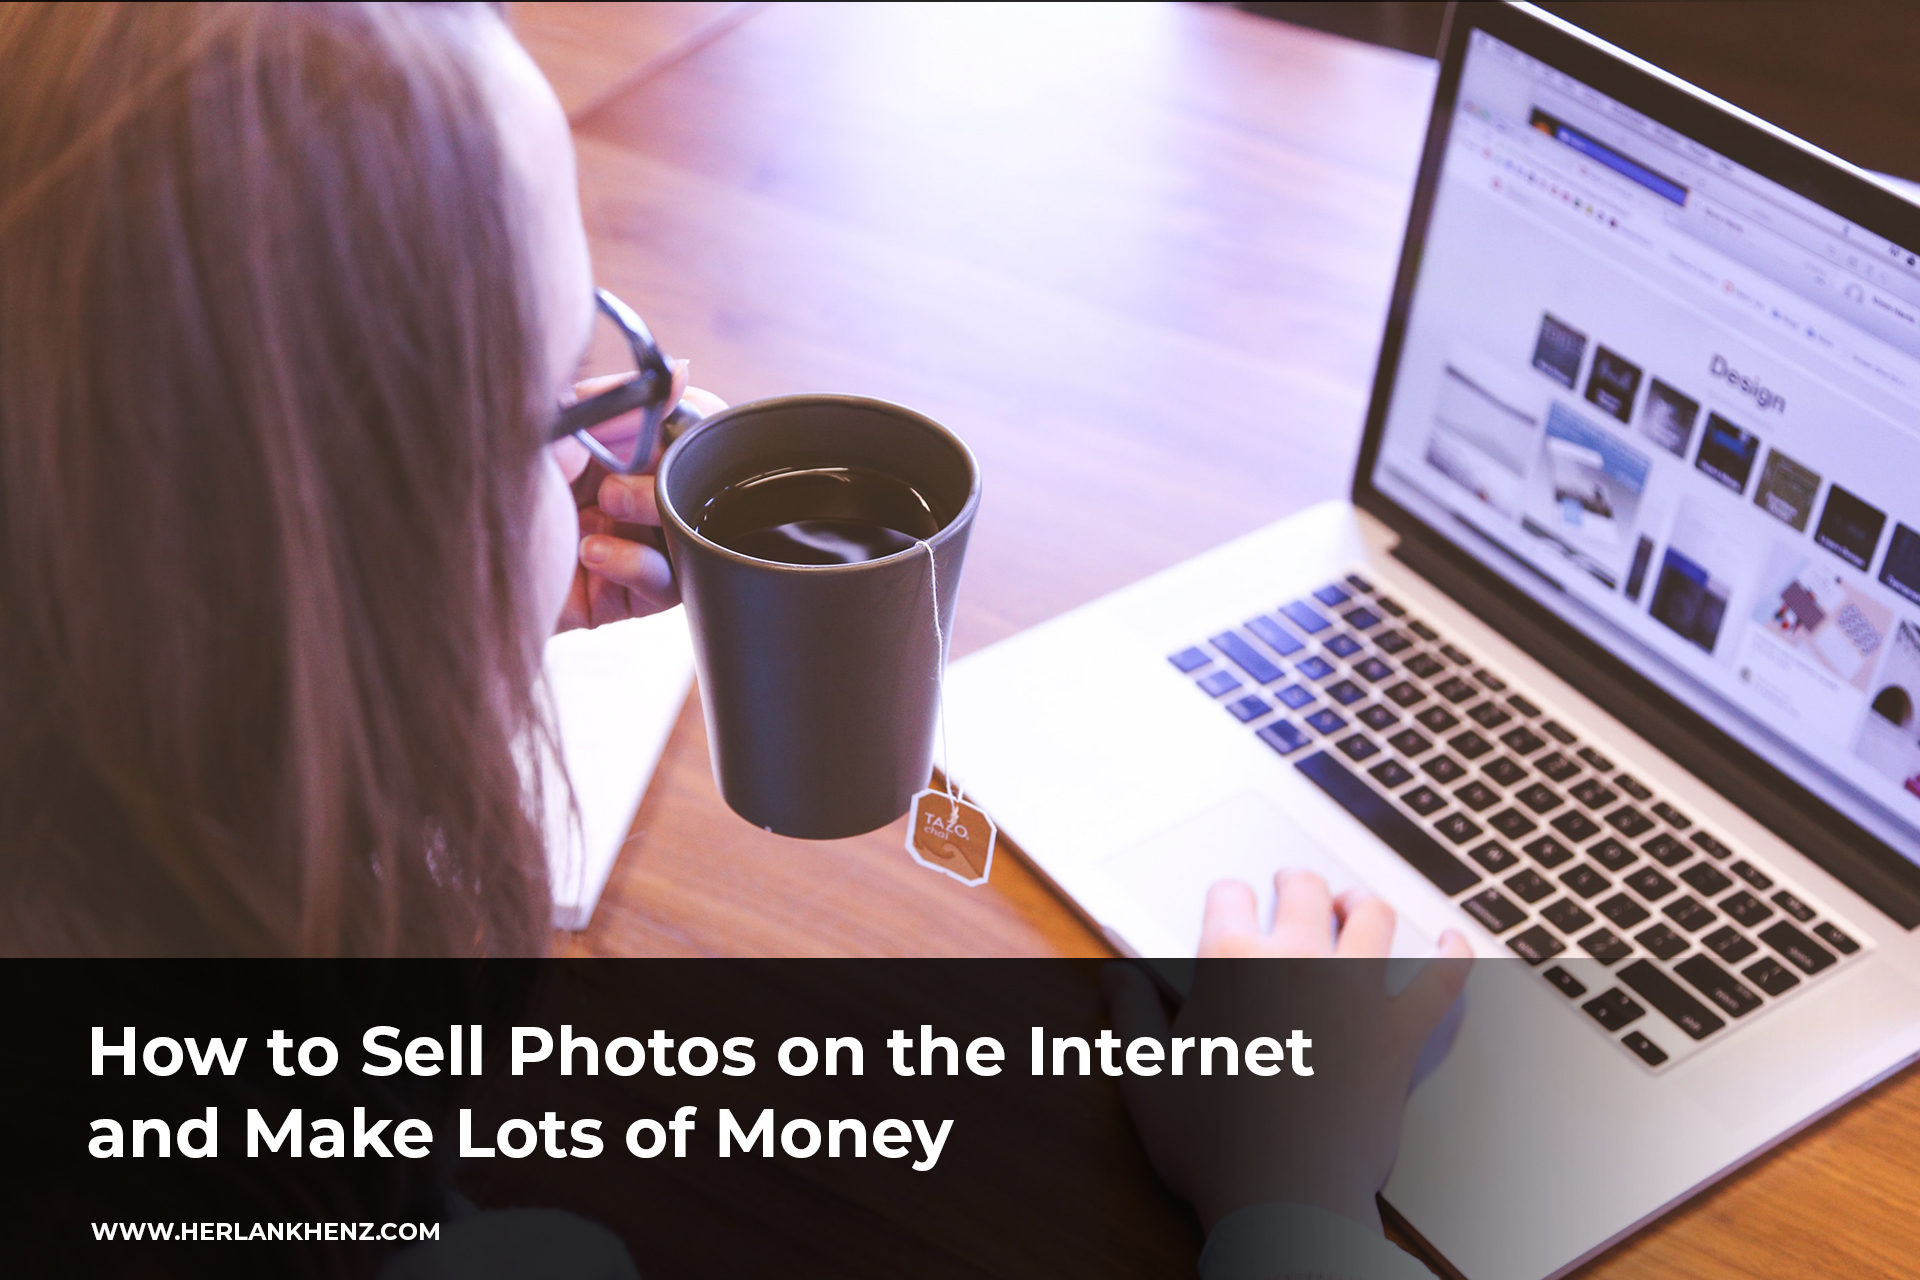 So verkaufen Sie Fotos im Internet und verdienen viel Geld